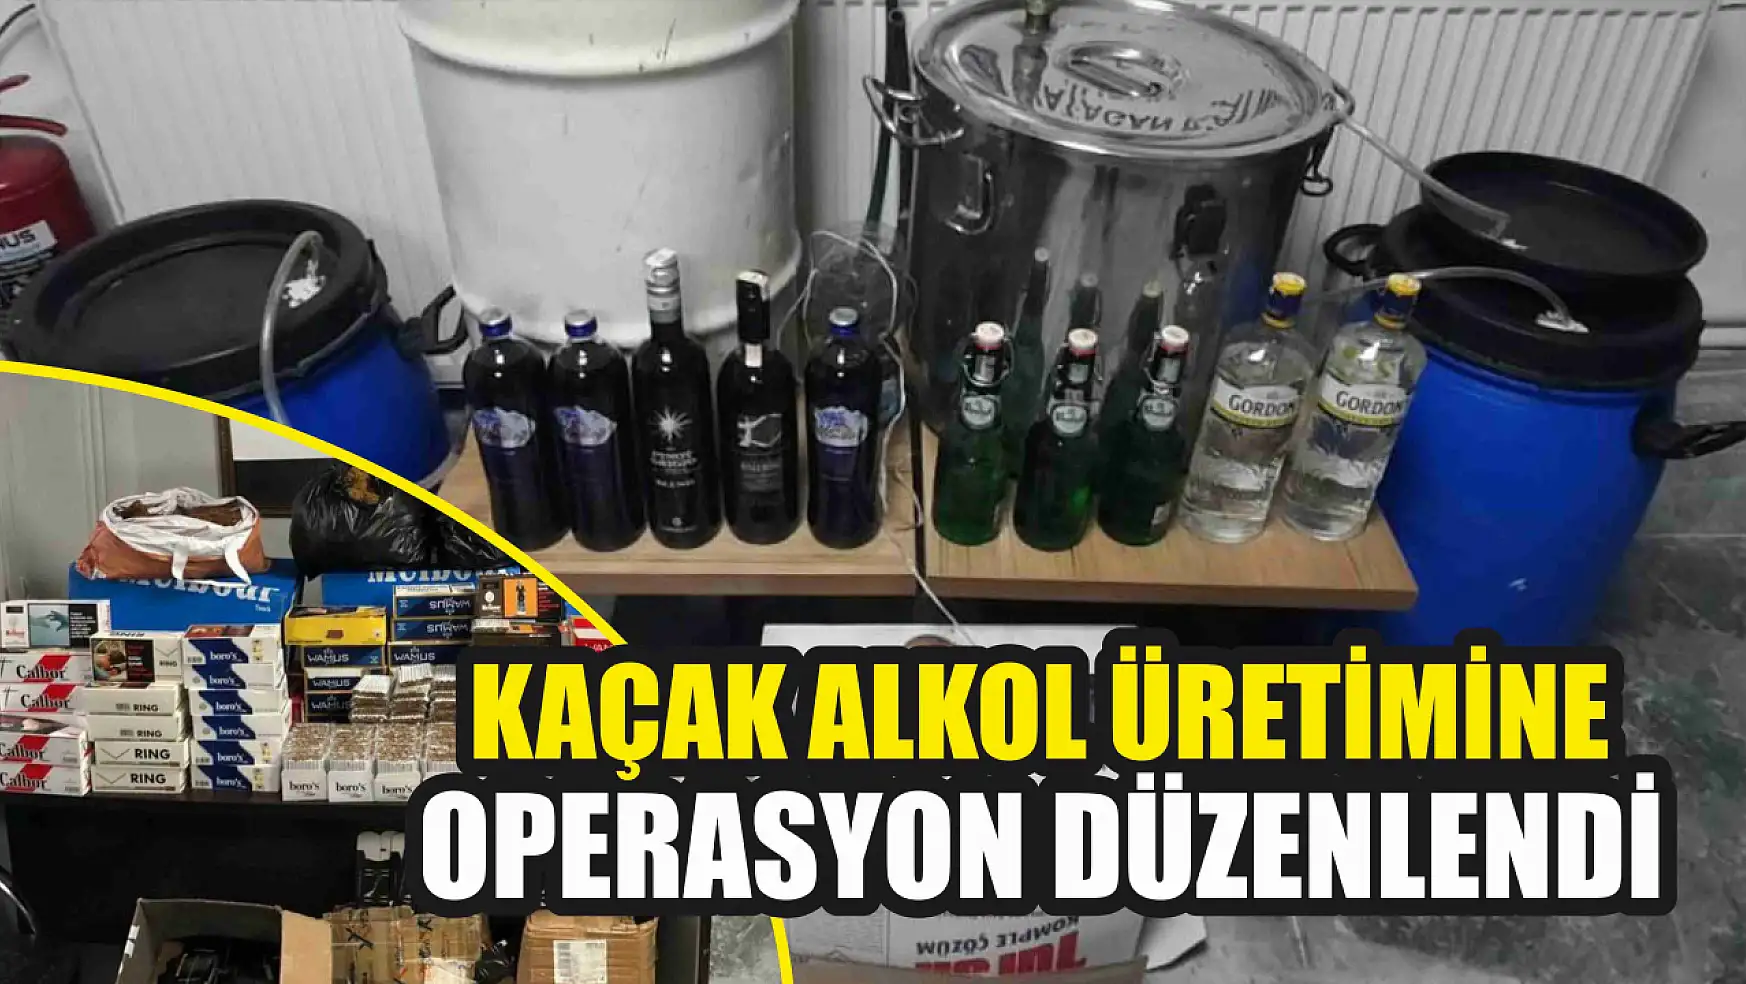 Kaçak alkol üretime operasyon düzenlendi